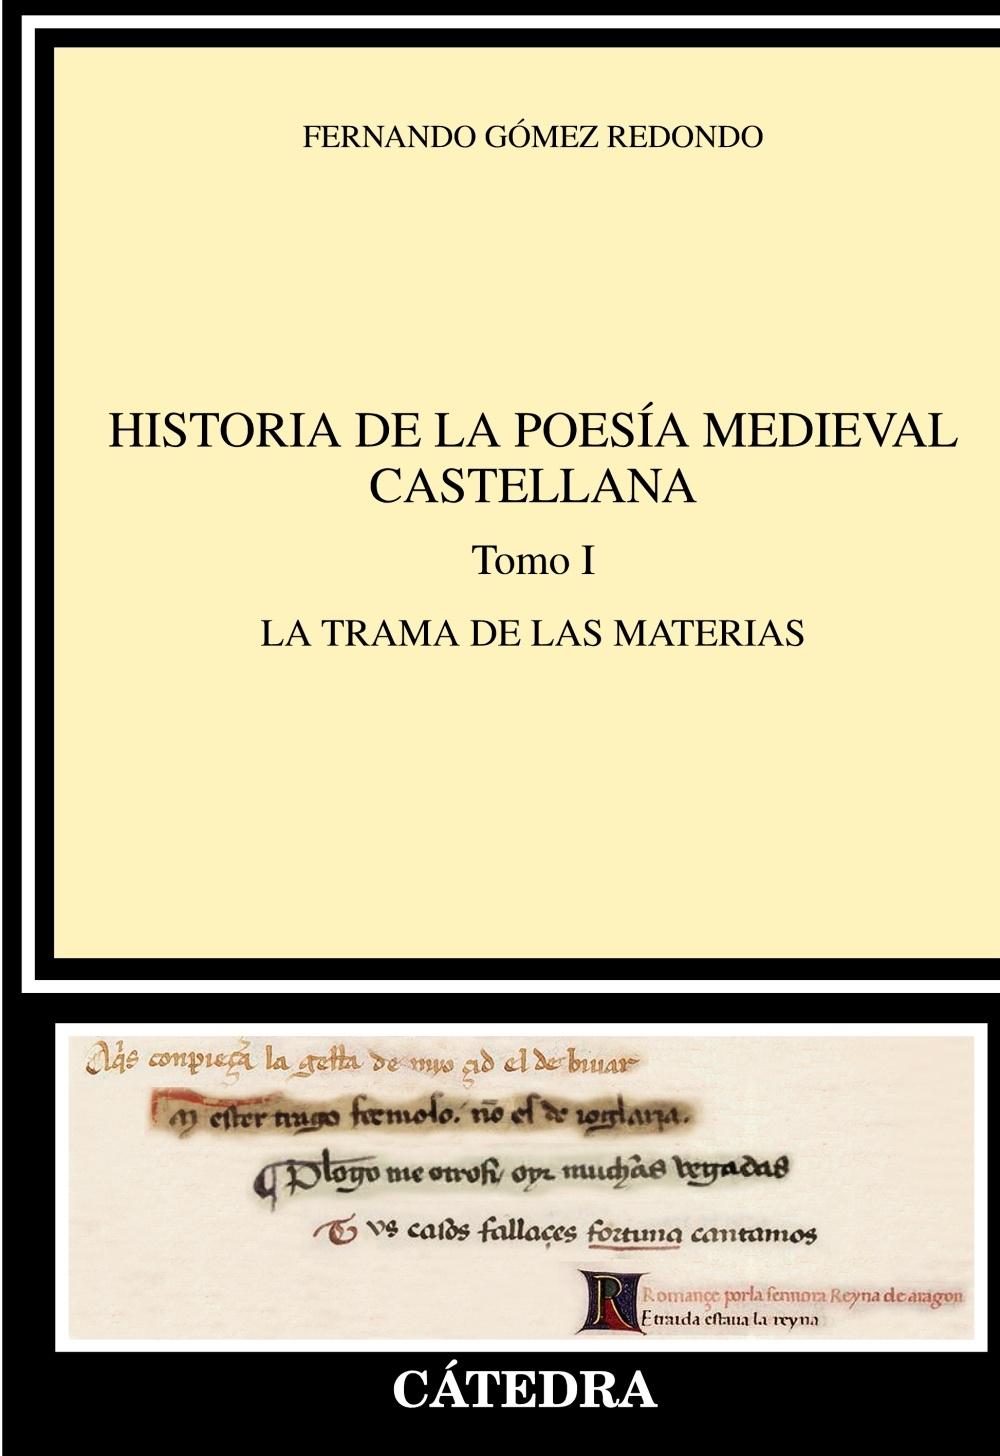 Historia de la poesía medieval castellana - Tomo I: La trama de las materias